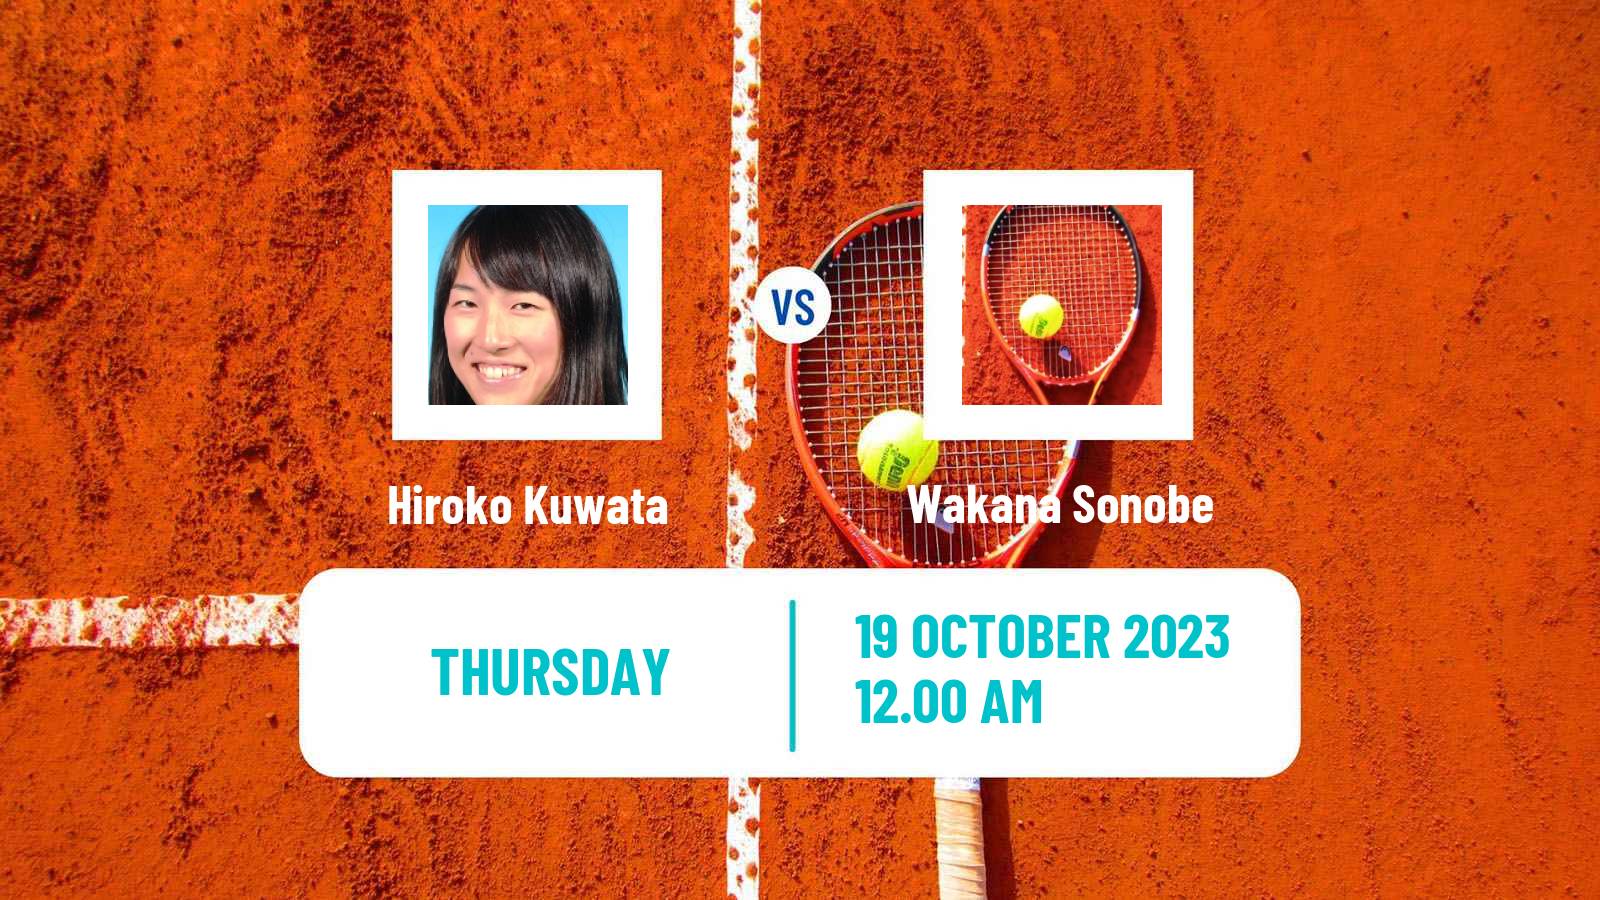 Tennis ITF W15 Hua Hin 2 Women Hiroko Kuwata - Wakana Sonobe